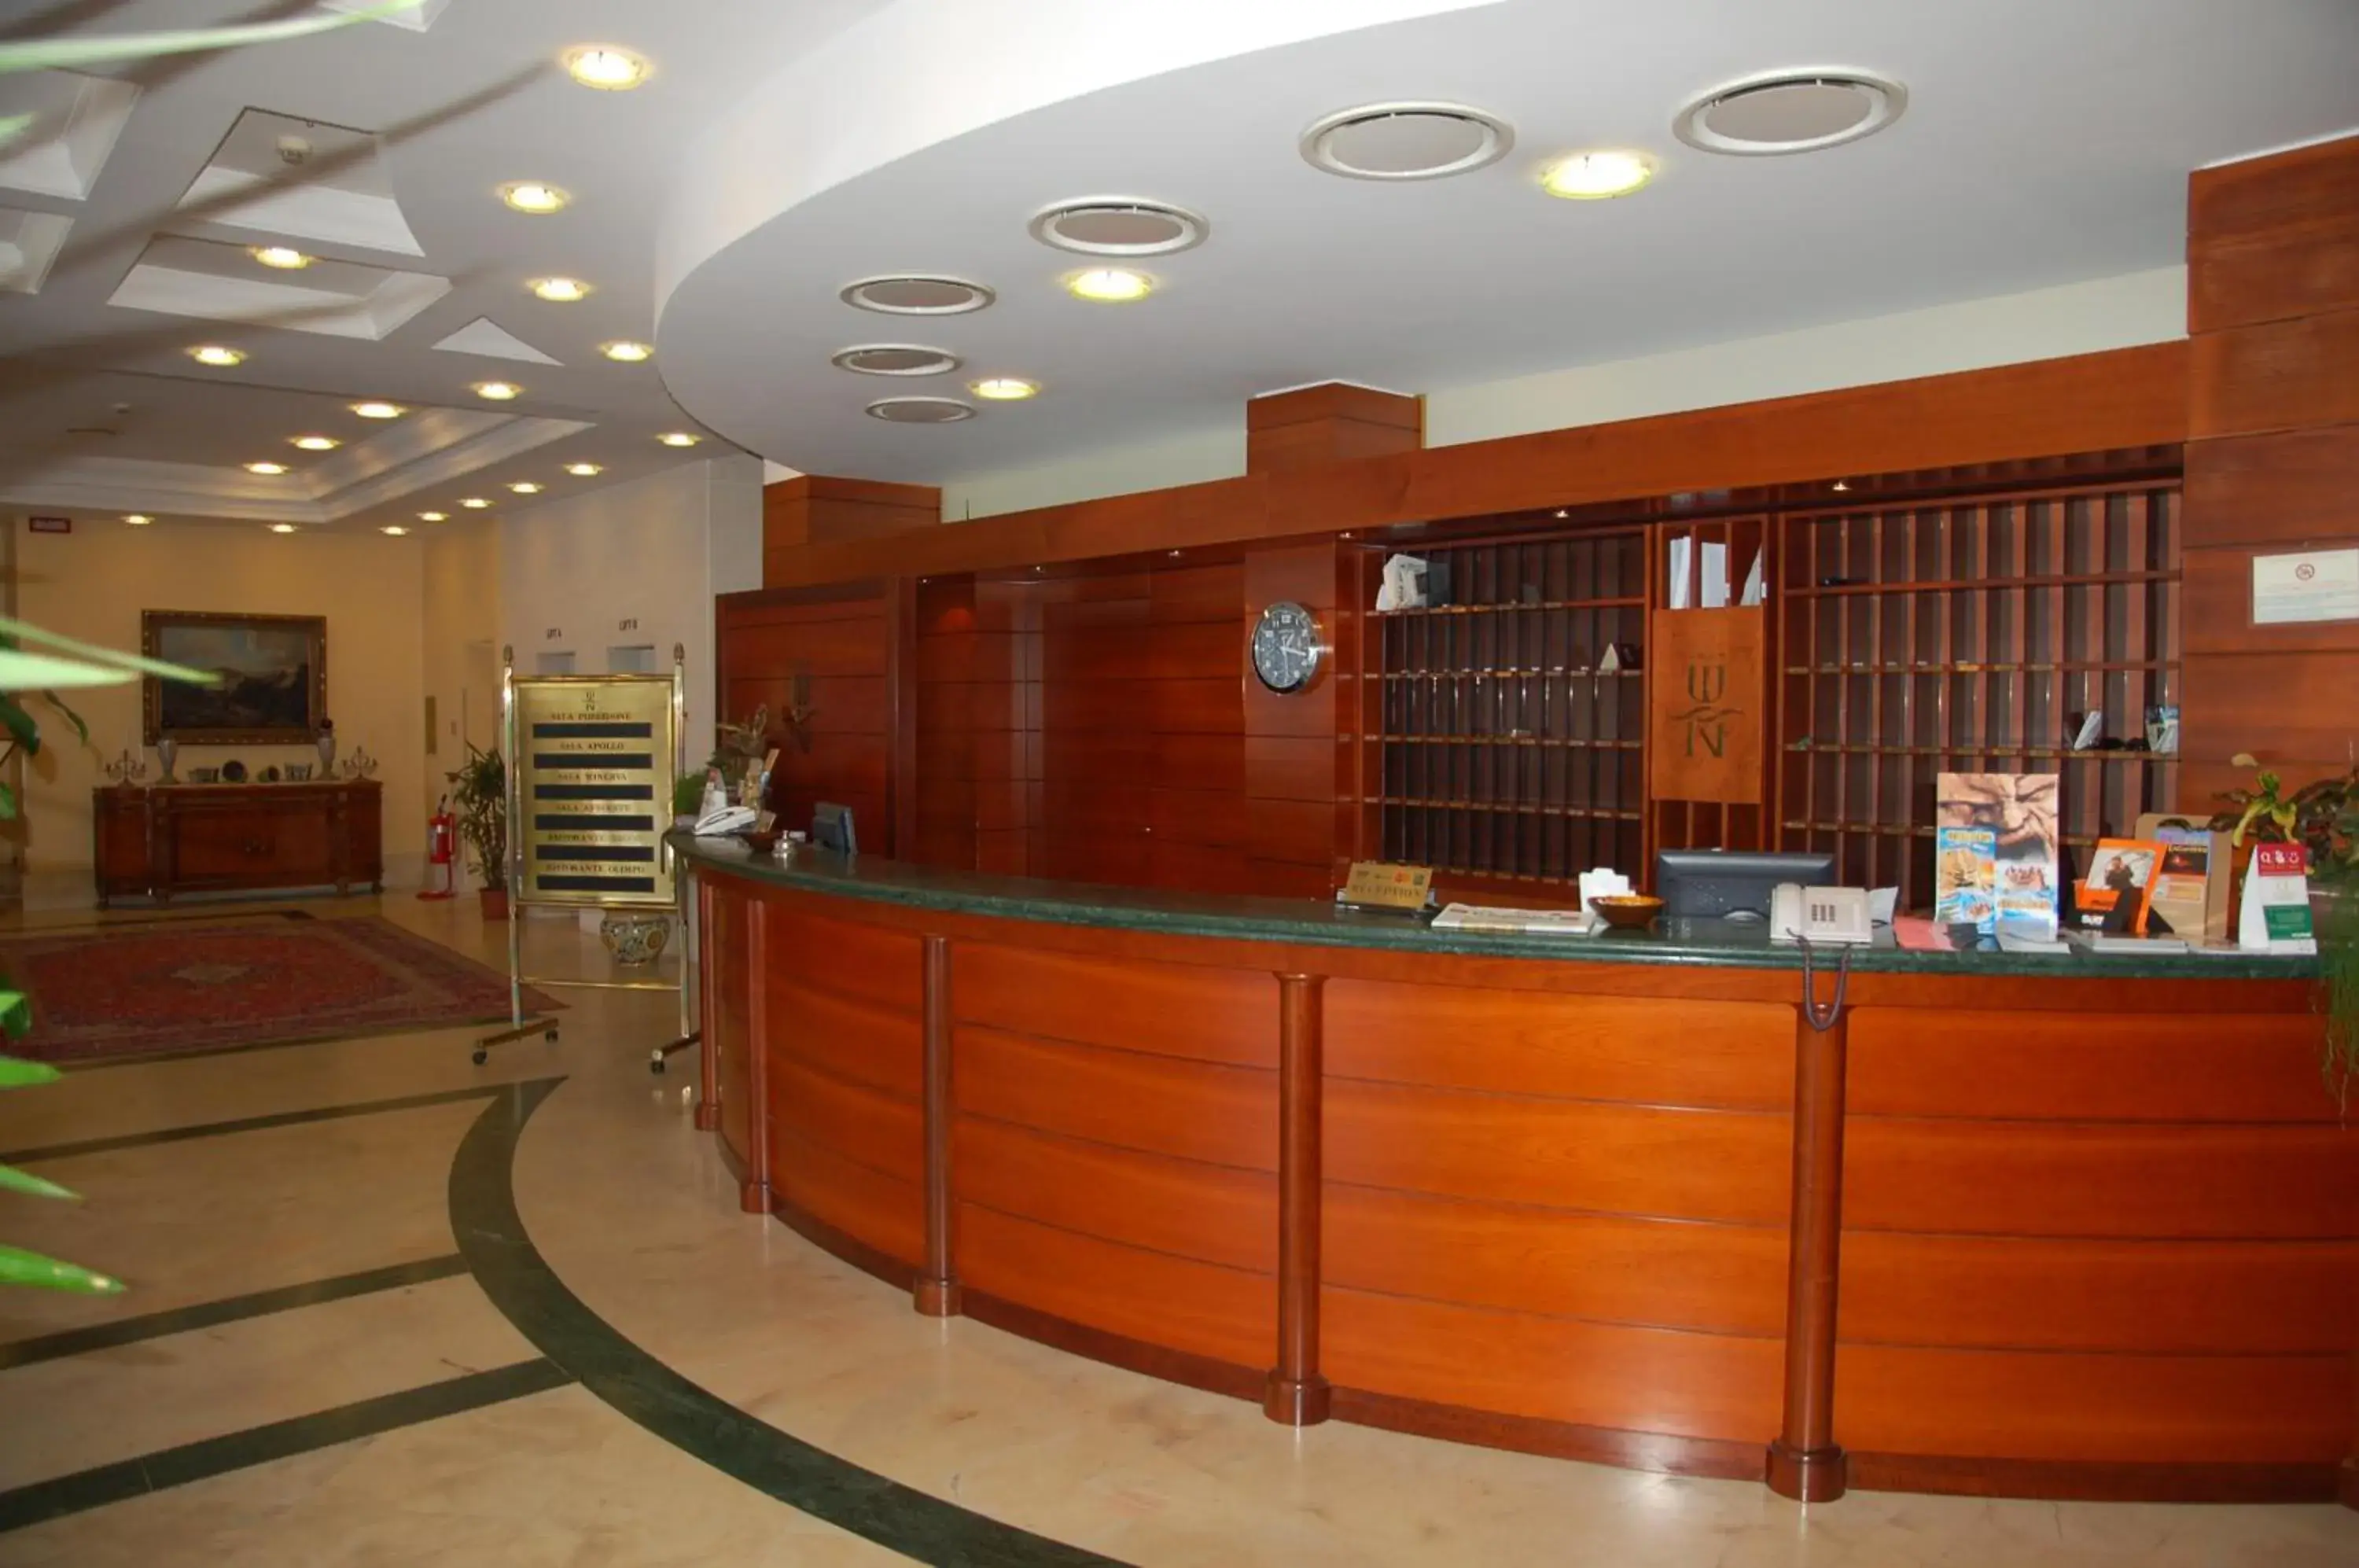 Lobby or reception, Lobby/Reception in Hotel Nettuno